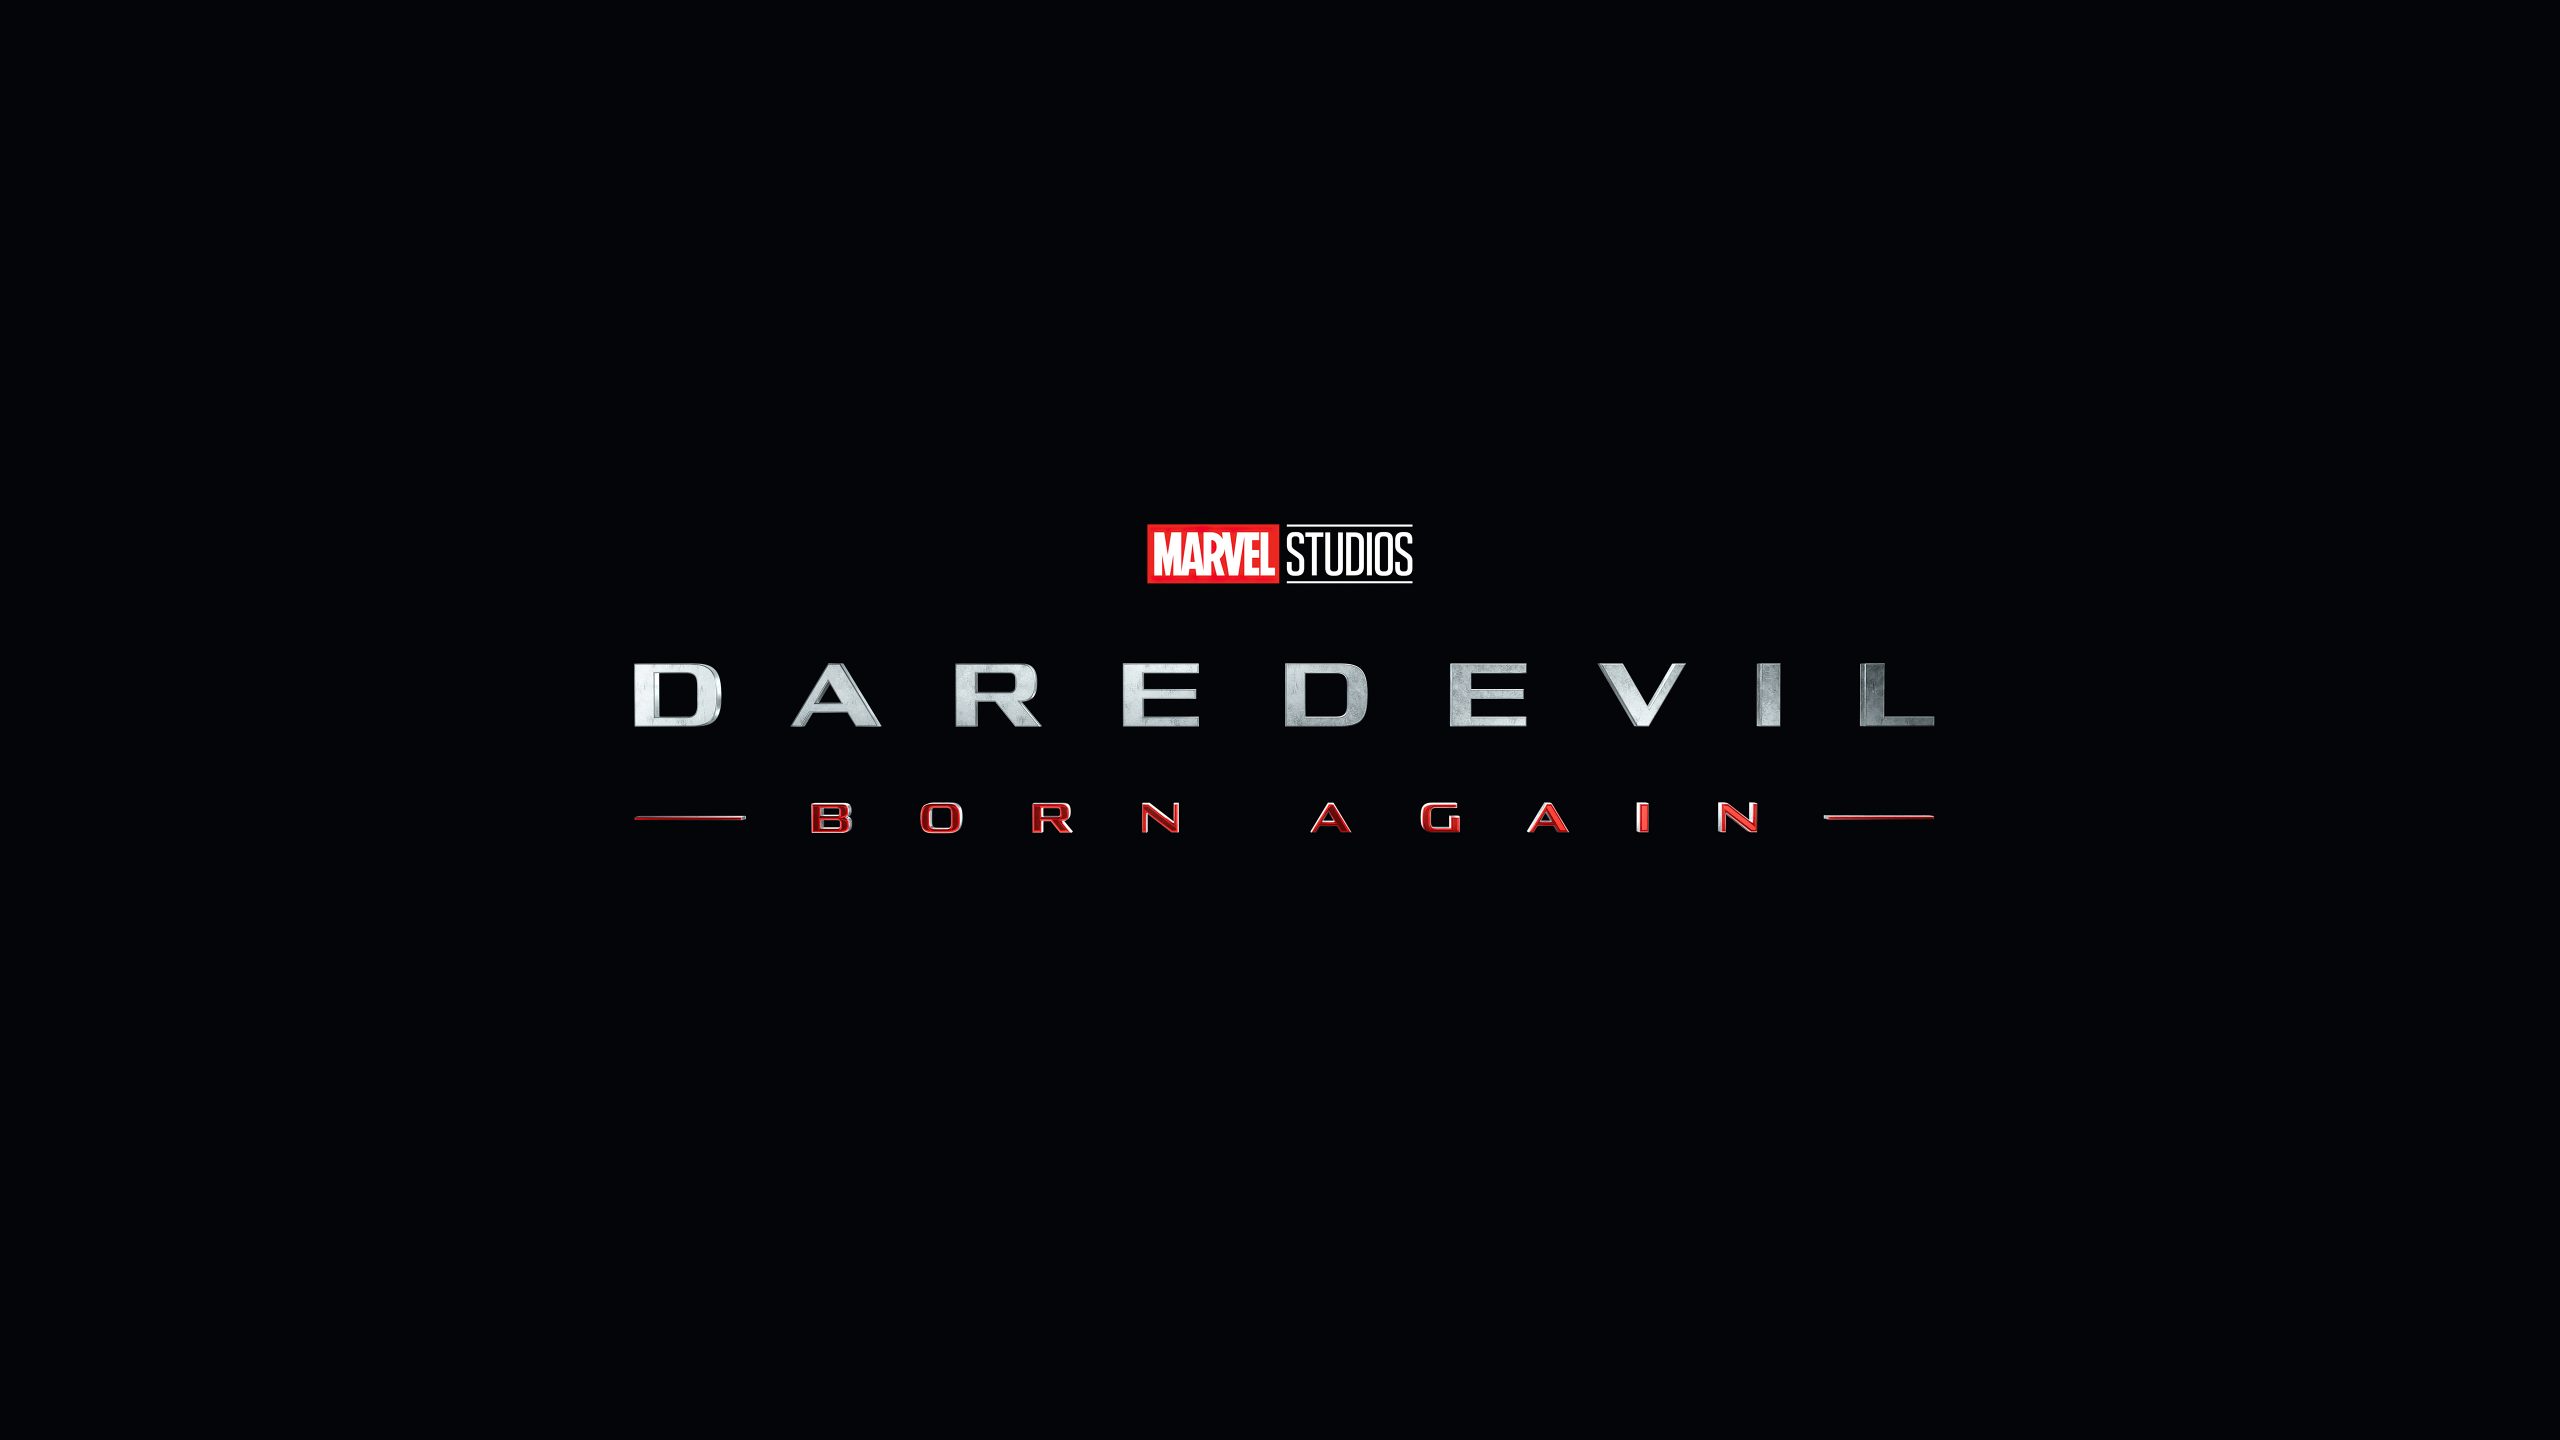 Daredevil-Born Again poster